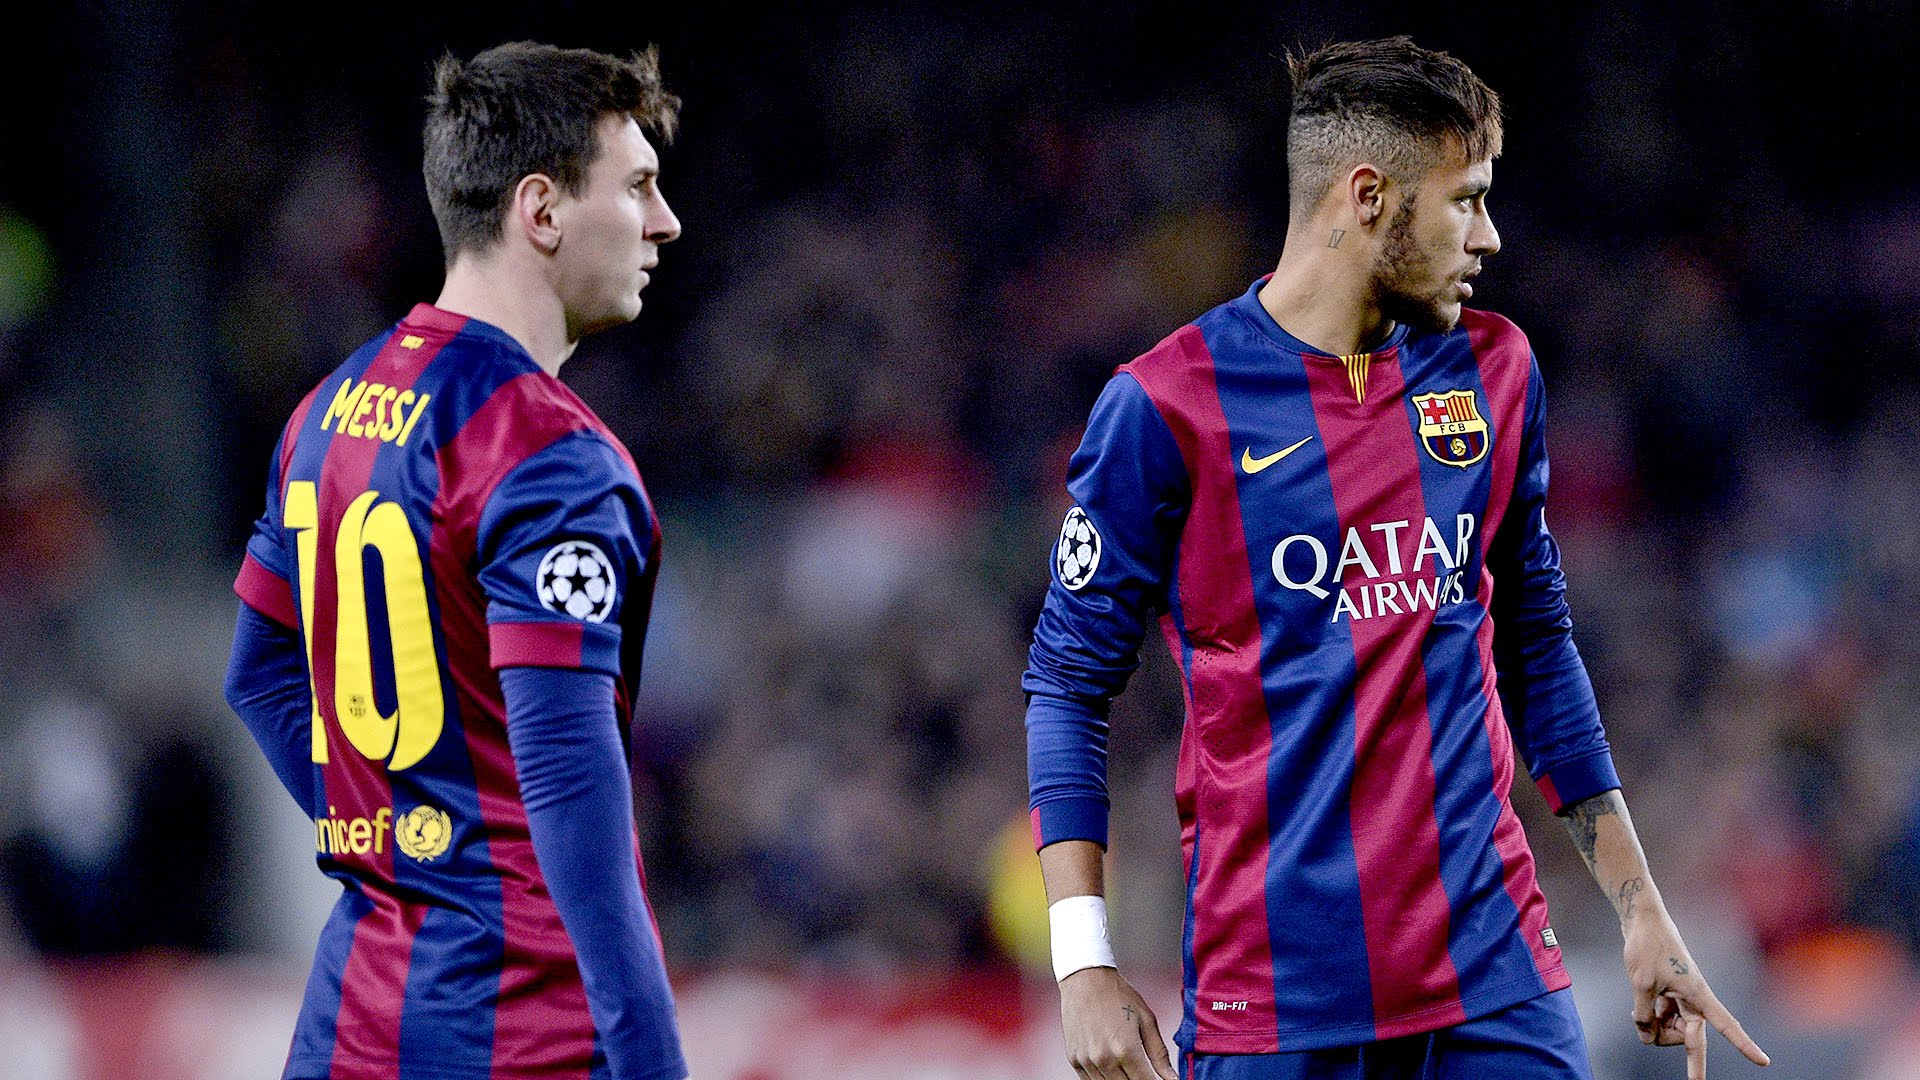 Messi and Neymar Wallpaper HD - WallpaperSafari